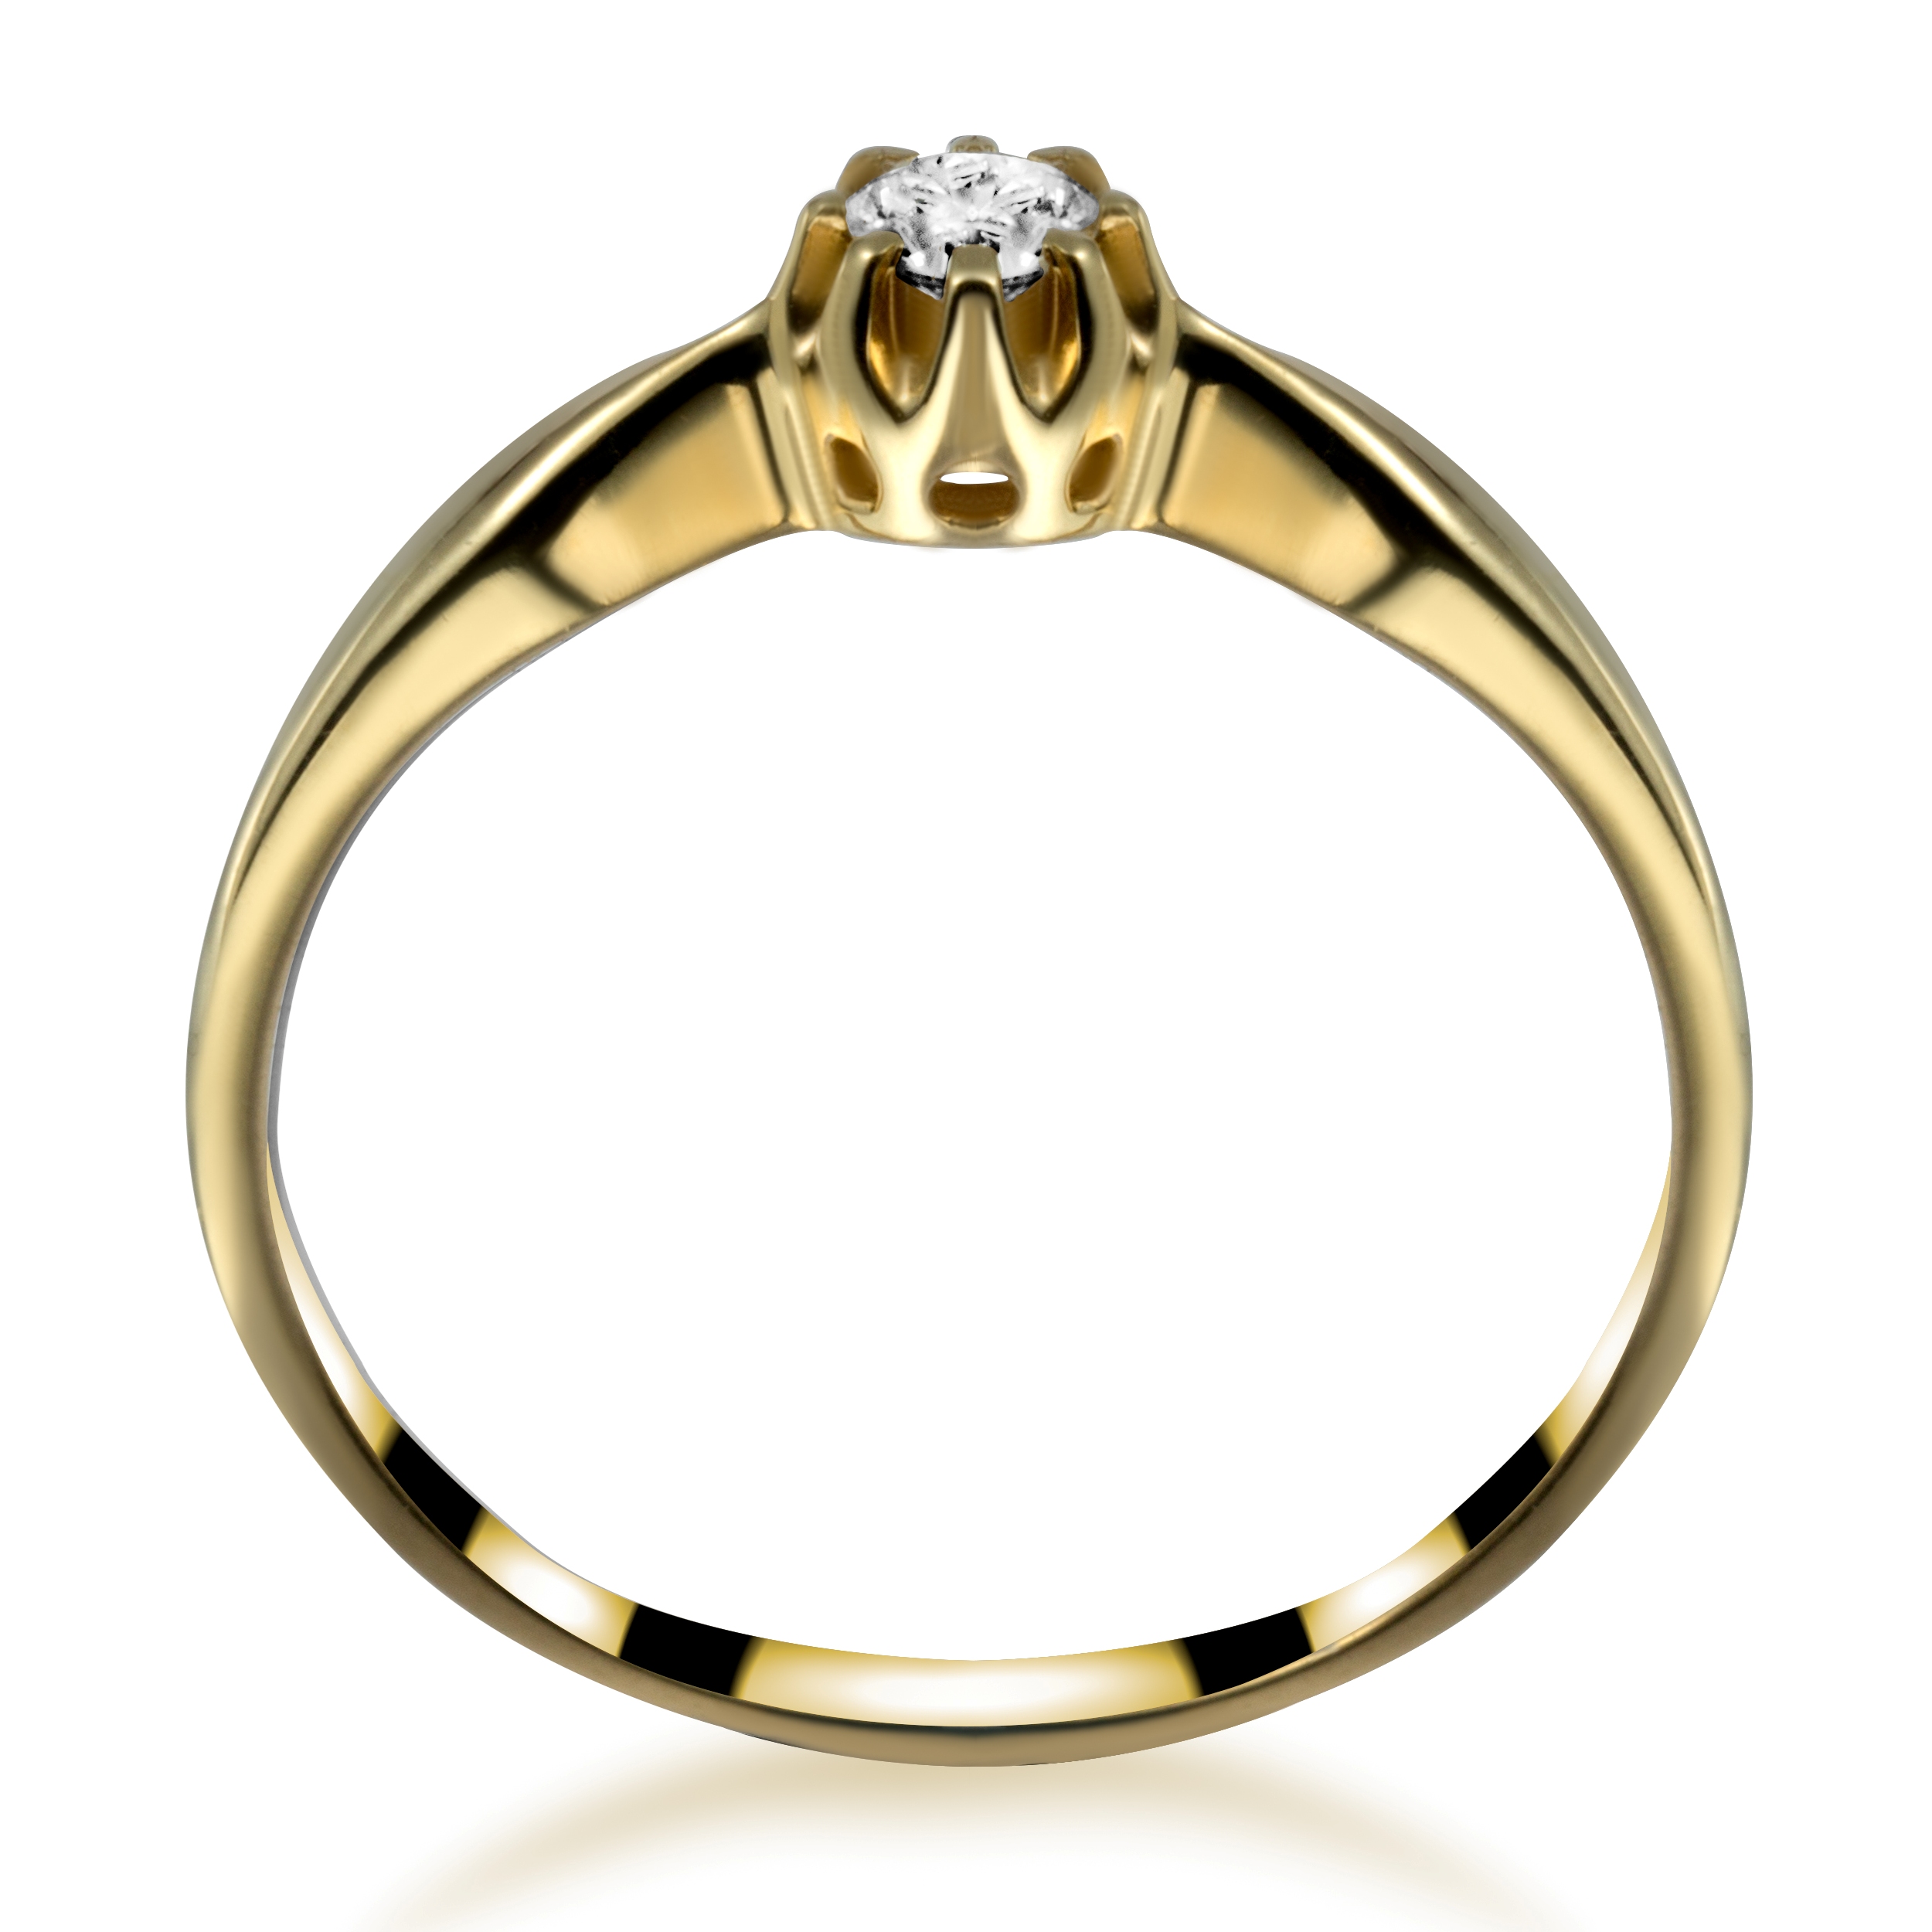 Diament w koronie - złoty pierścionek z diamentem - widok z boku